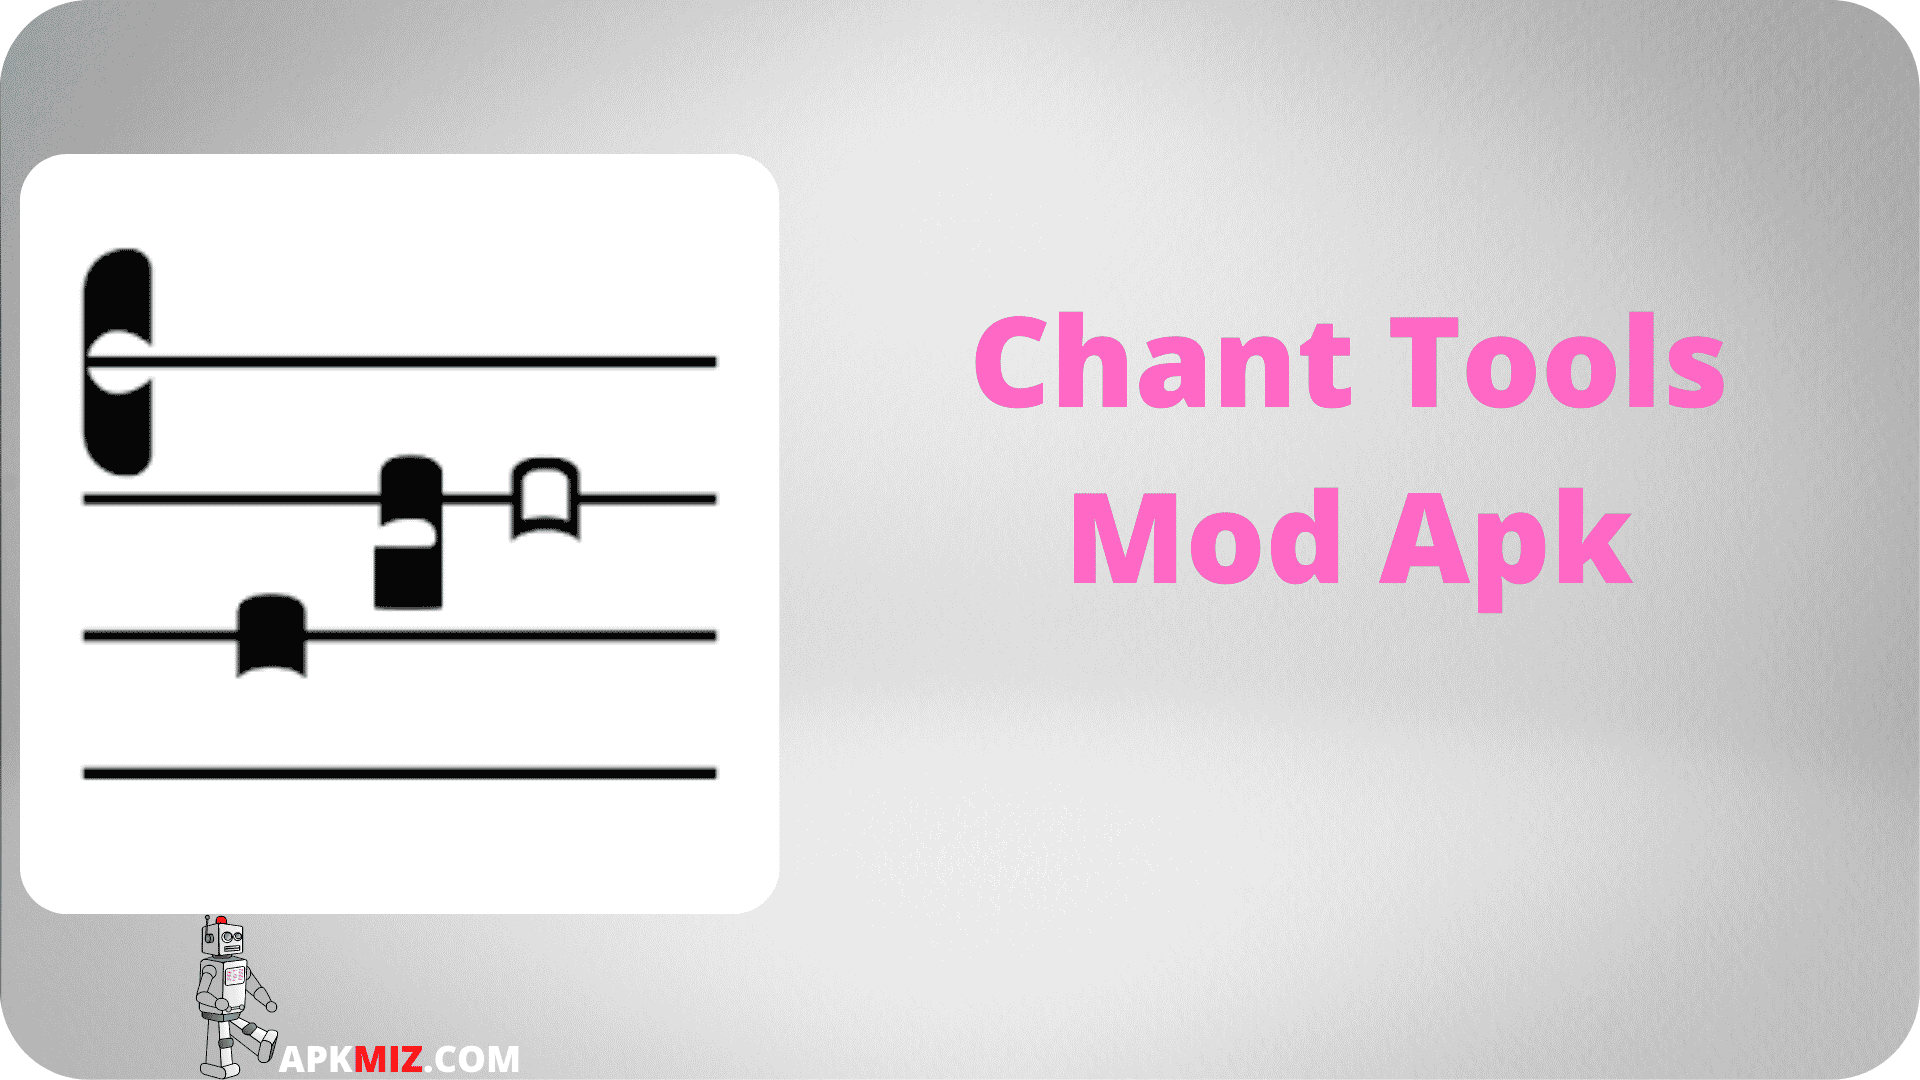 Chant Tools Mod Apk